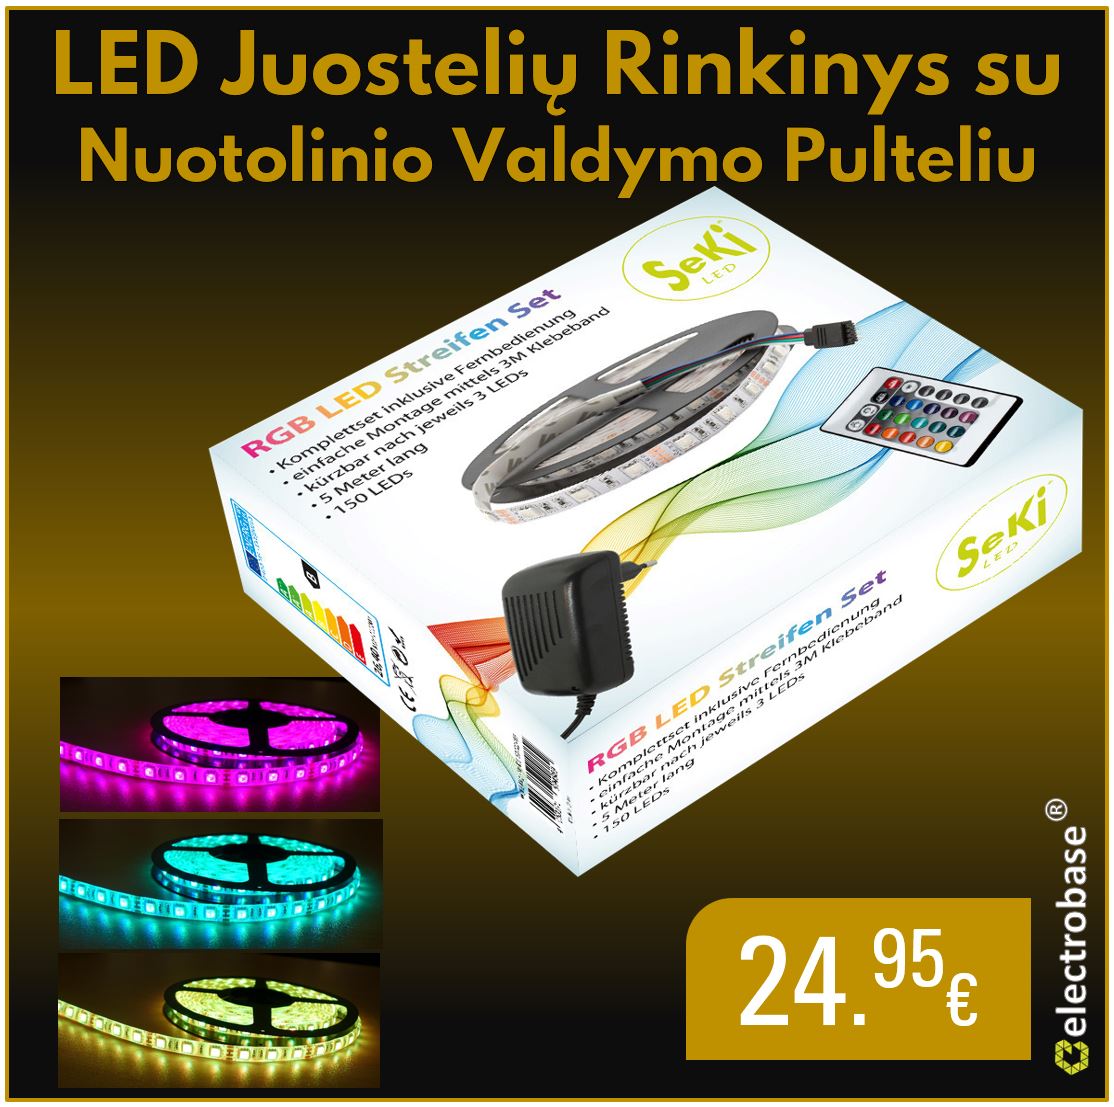 Spalvotų ( RGB ) LED juostelių komplektas su nuotolinio valdymo pulteliu - tik 24,95€ 